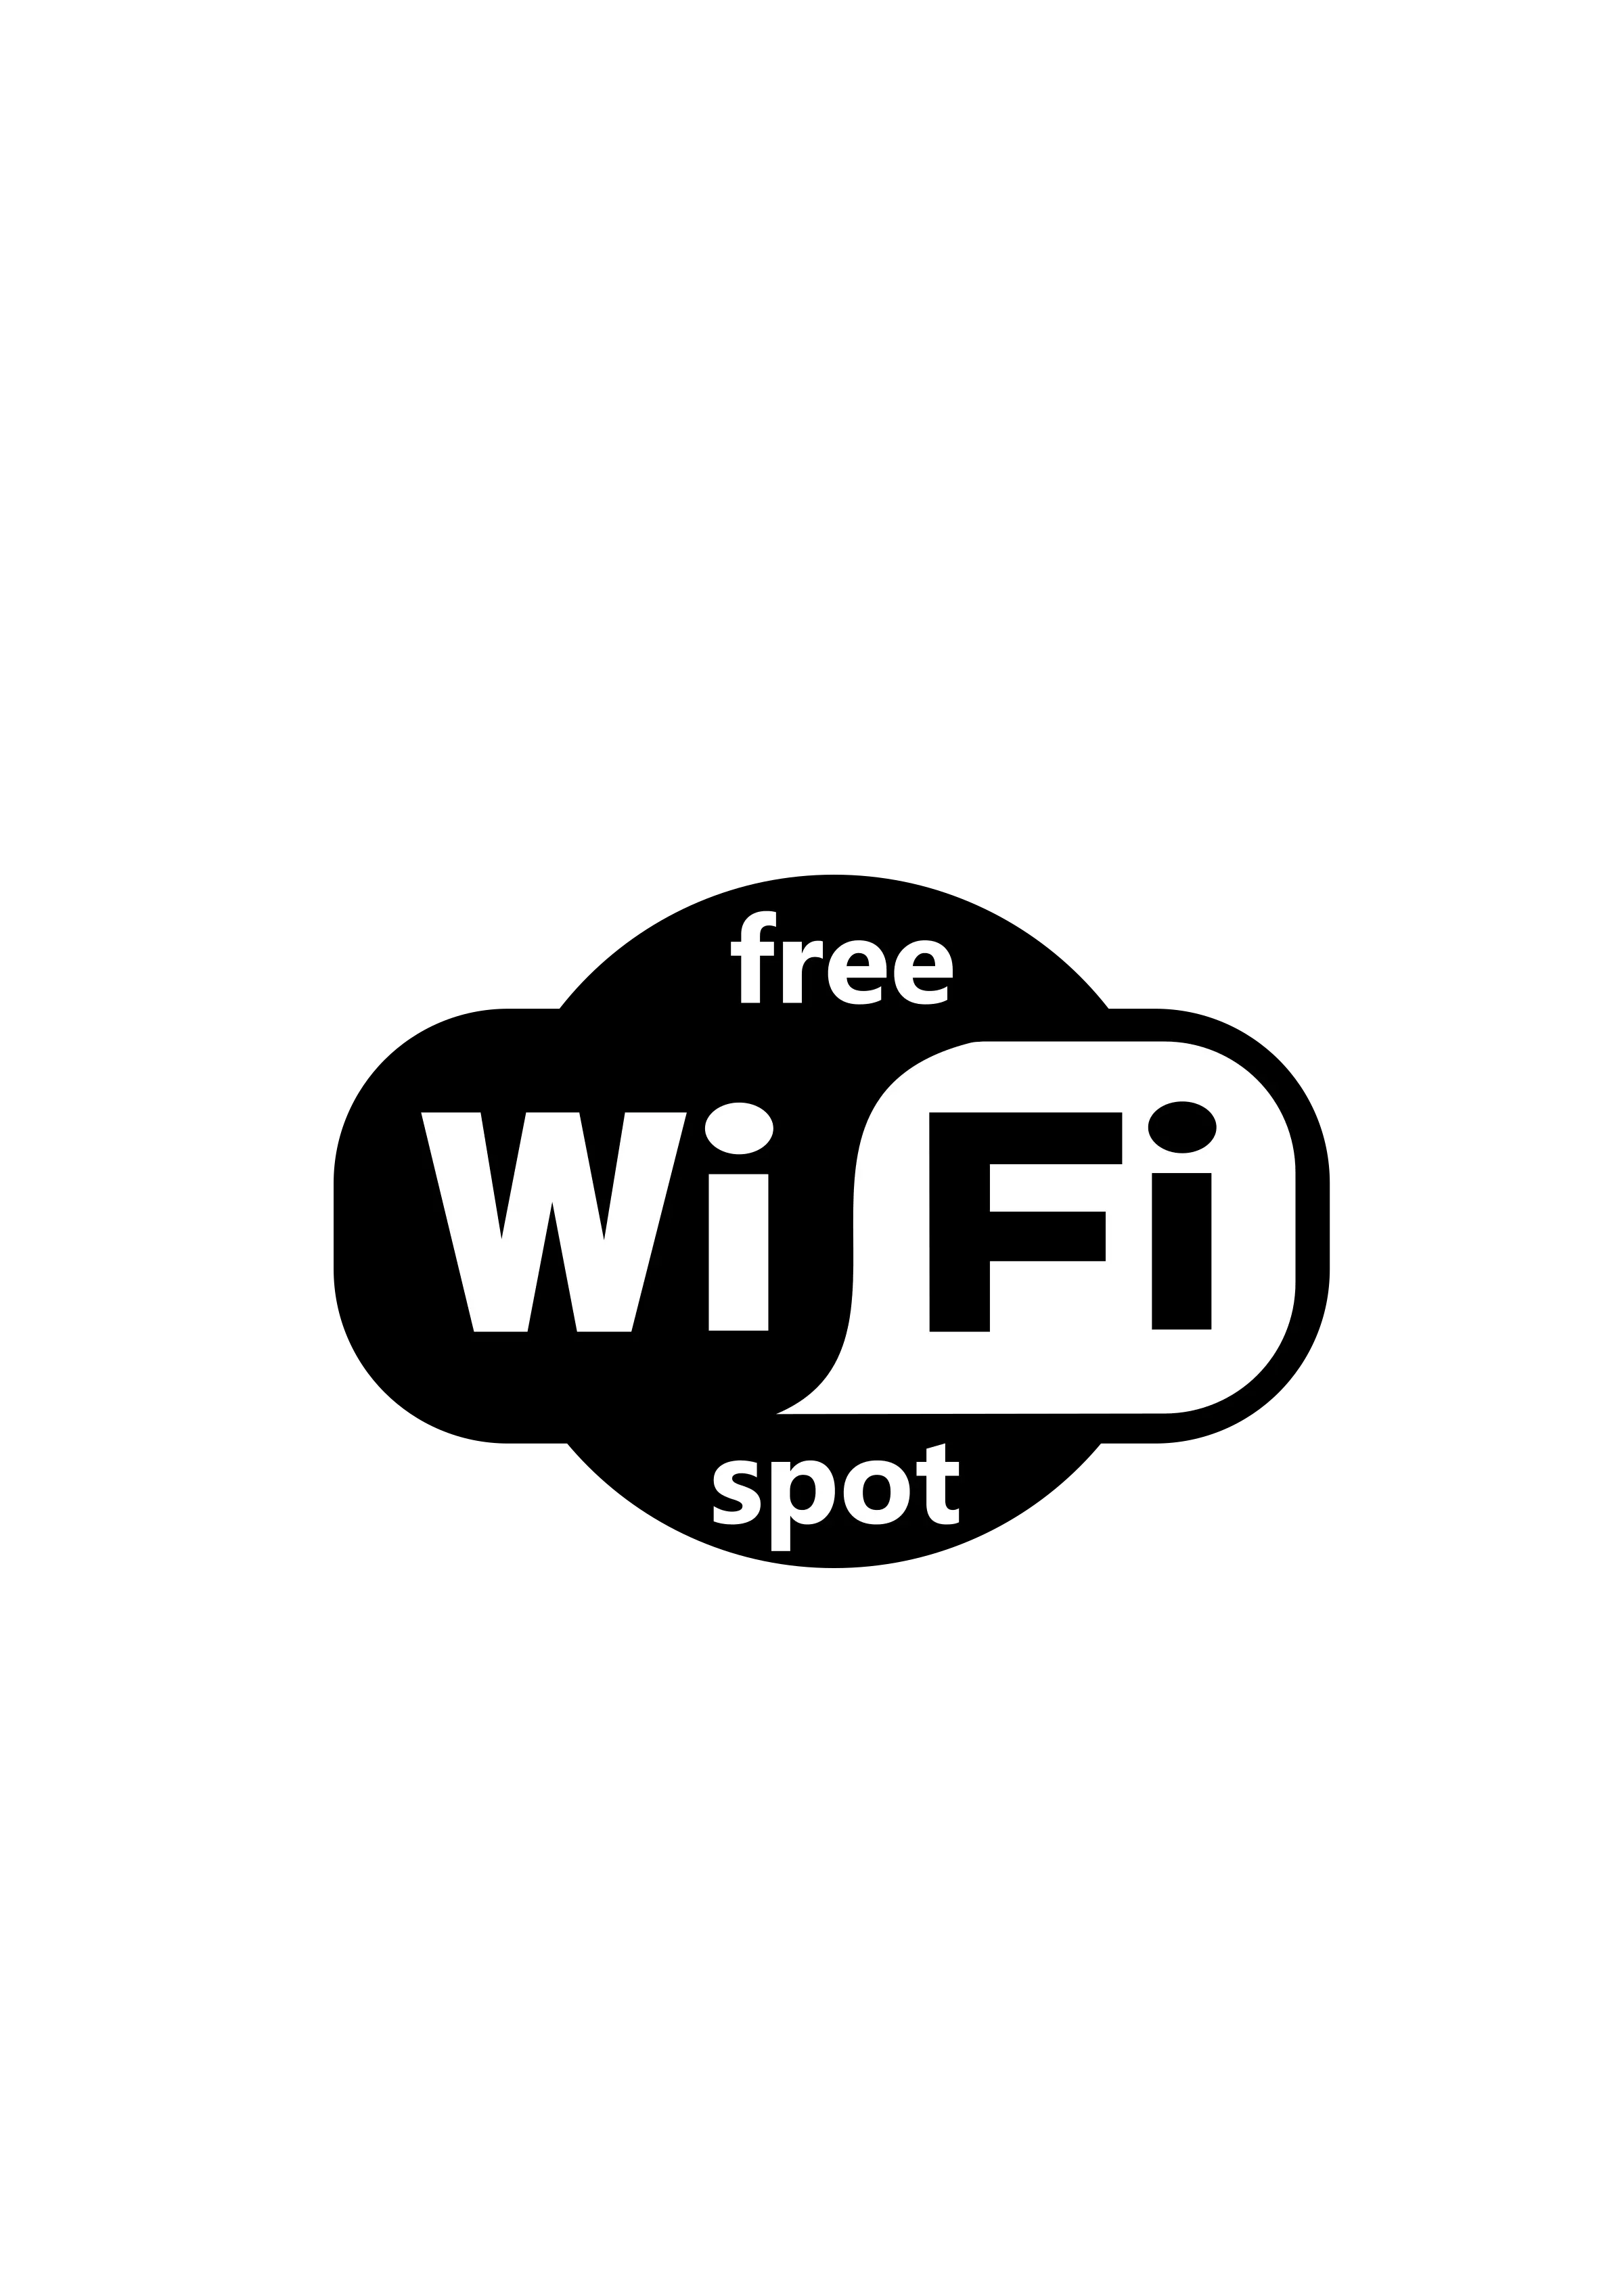 Att Logo Png Download Free Clip Art Logo Free Wifi Vector Att Logo Png